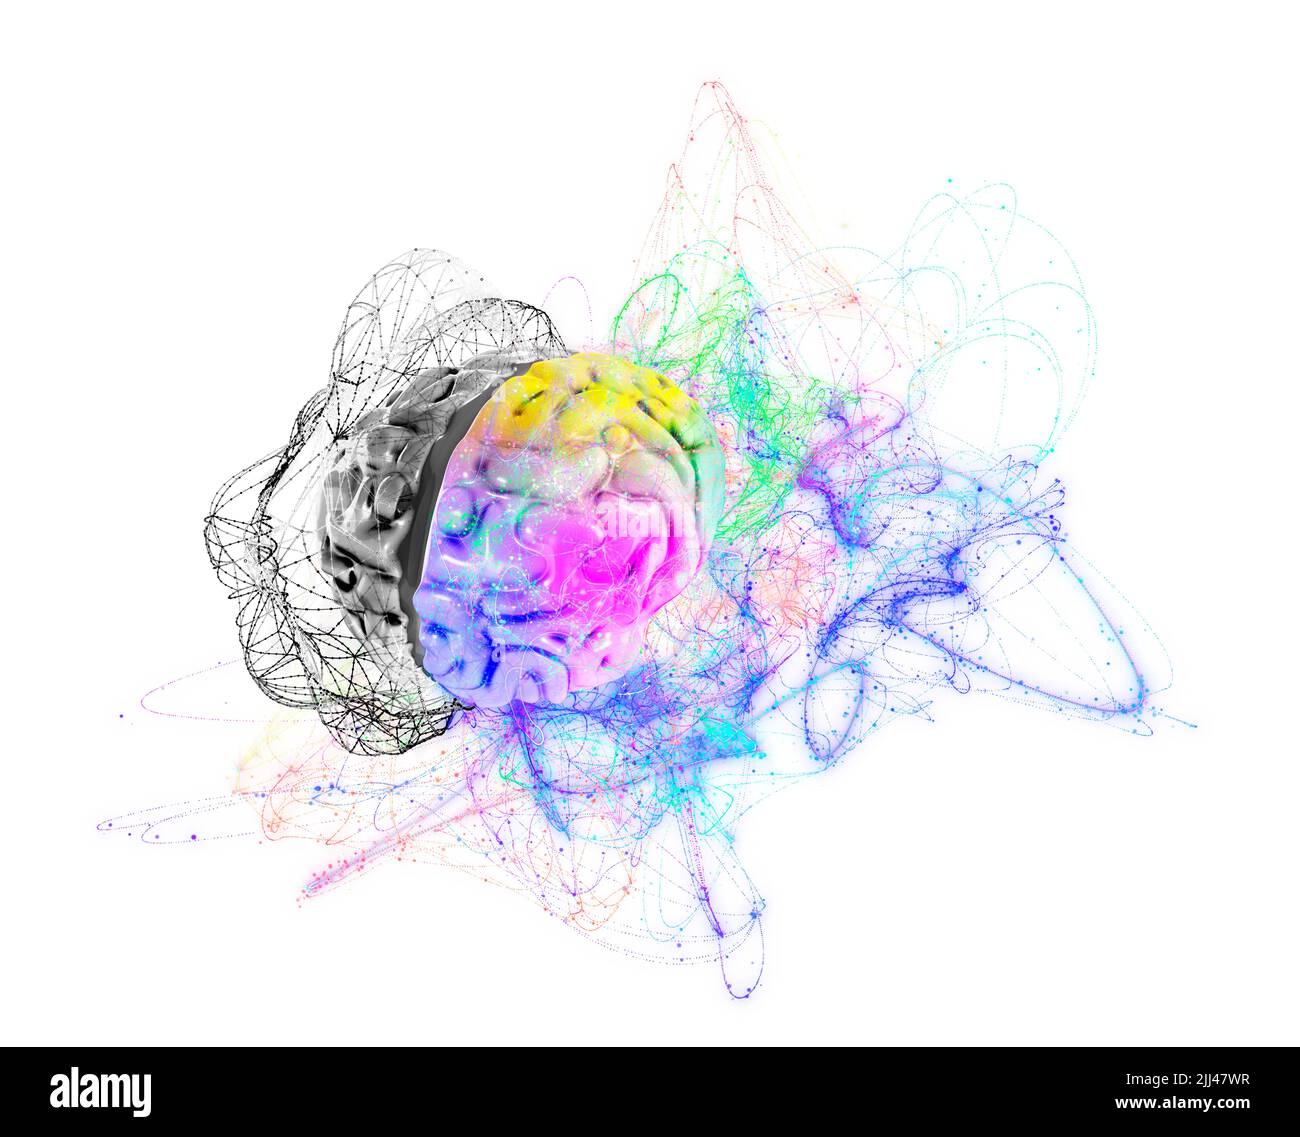 Illustrazione di un cervello umano con gli emisferi cerebrali sinistro e destro. Foto Stock